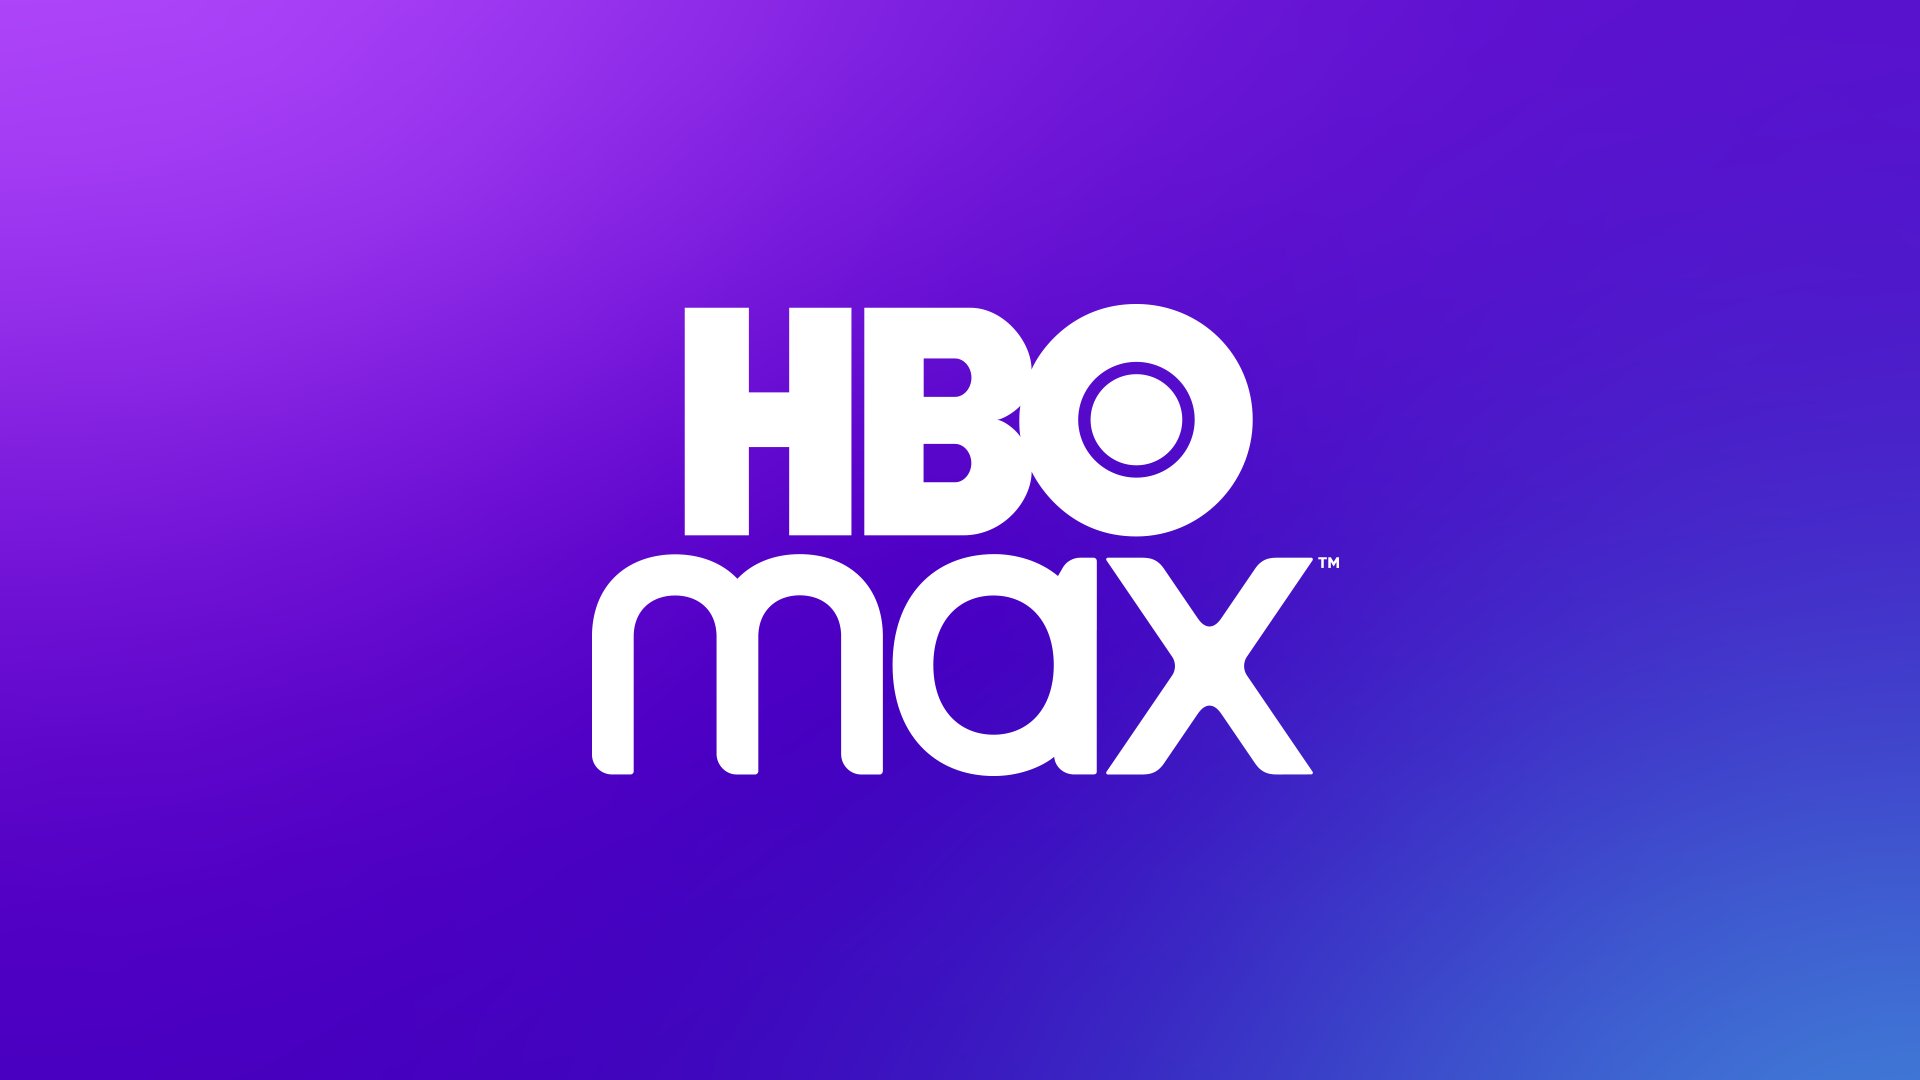 Casas Bahia e Ponto lançam parceria com HBO Max – CidadeMarketing